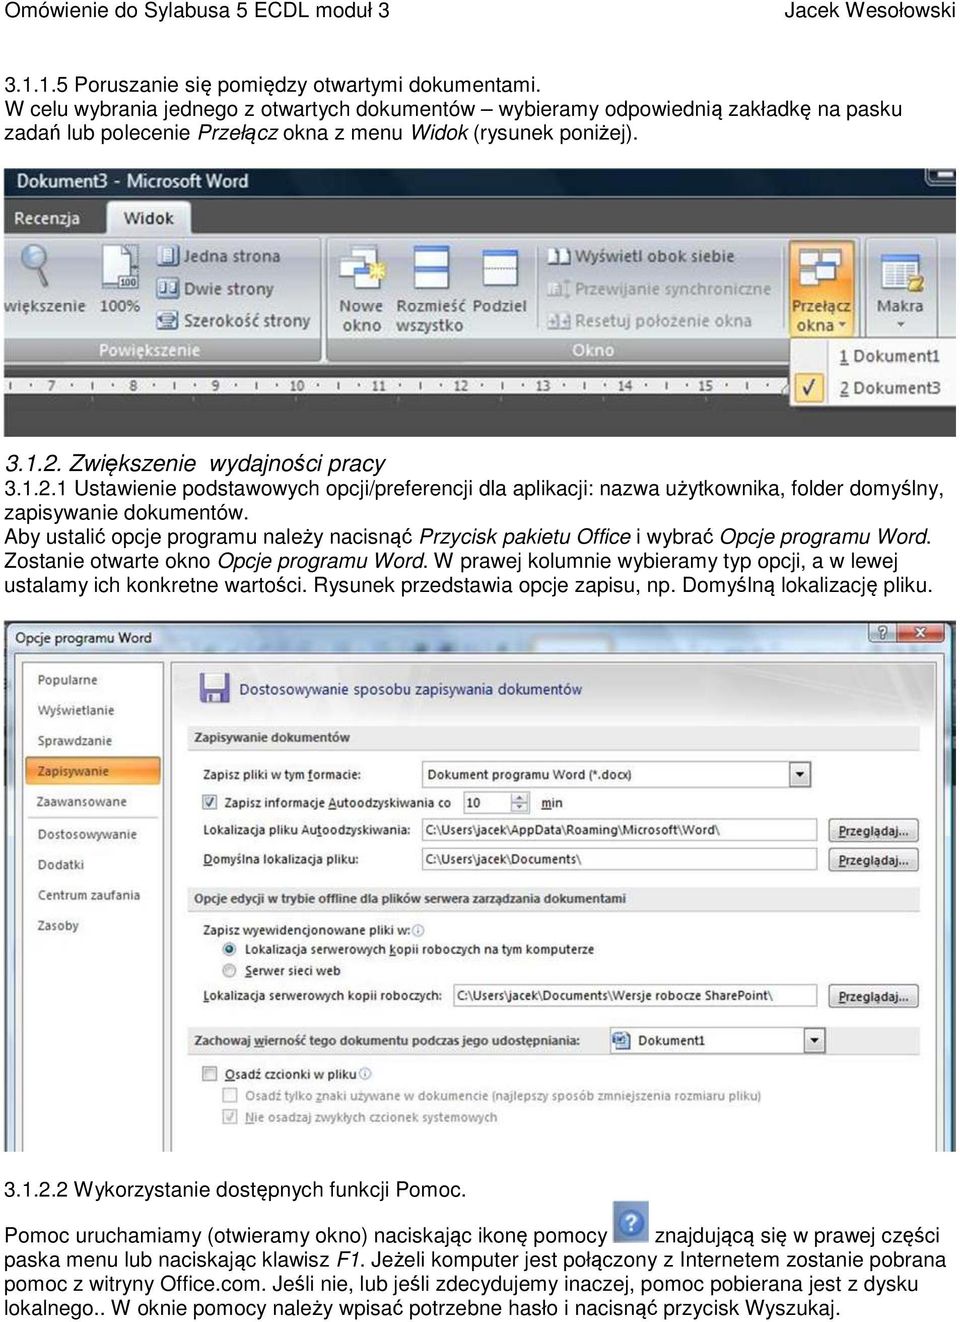 Zwiększenie wydajności pracy 3.1.2.1 Ustawienie podstawowych opcji/preferencji dla aplikacji: nazwa użytkownika, folder domyślny, zapisywanie dokumentów.